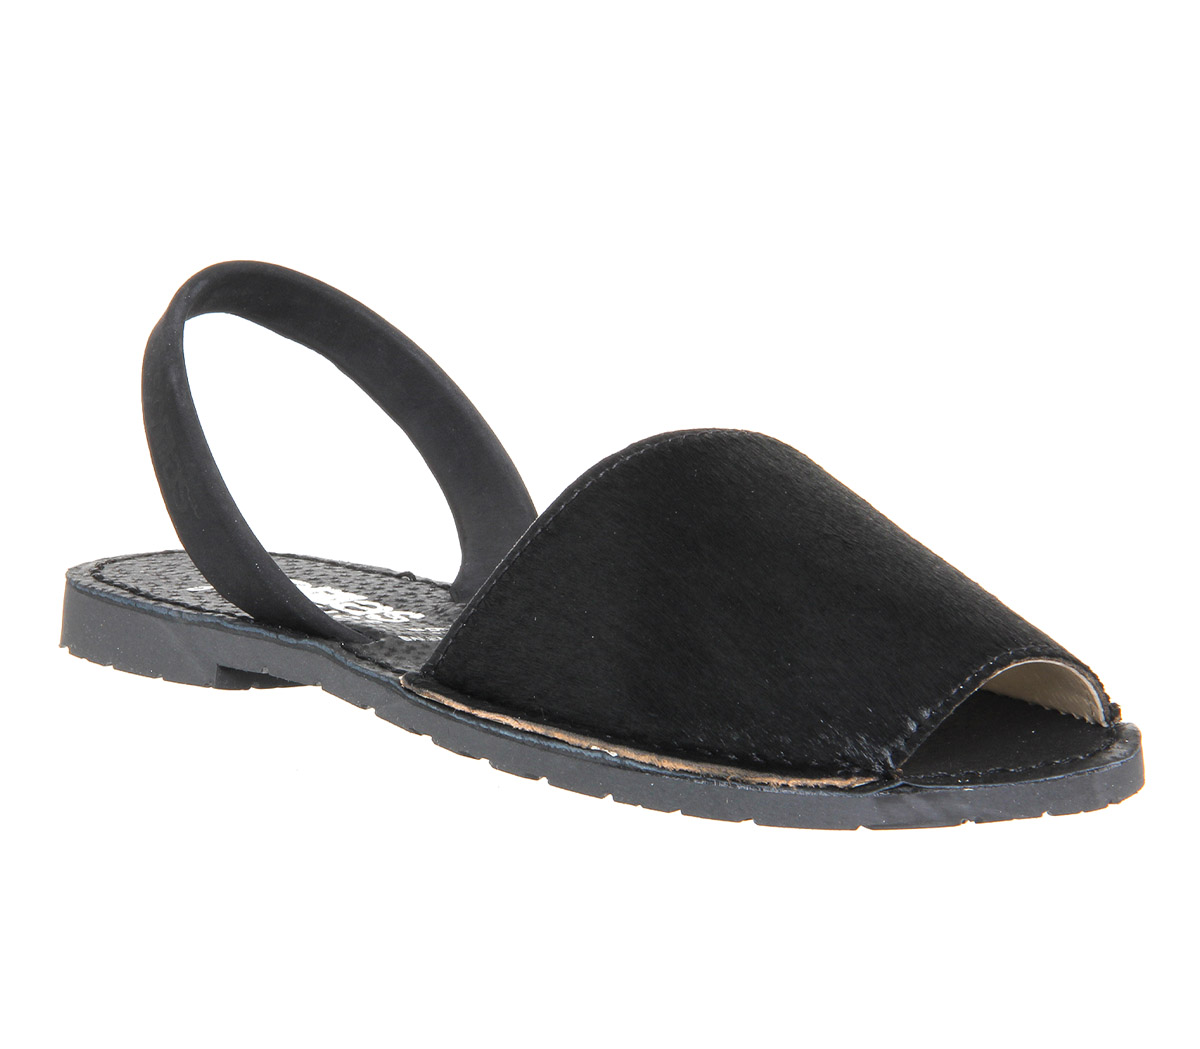 Solillas Solillas Sandals Black Mono Leather - Sandals